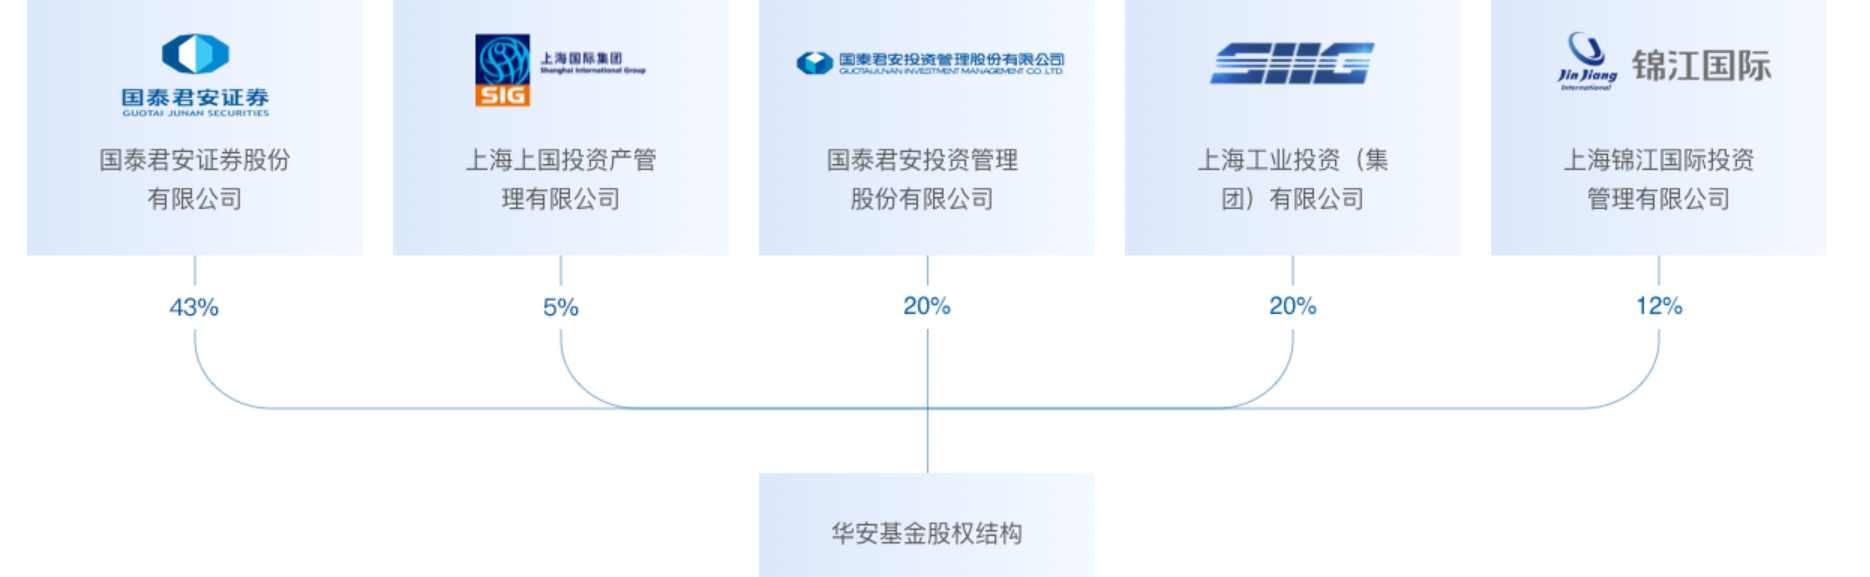 国泰君安受让华安基金15%股权暨关联交易进展公告发布